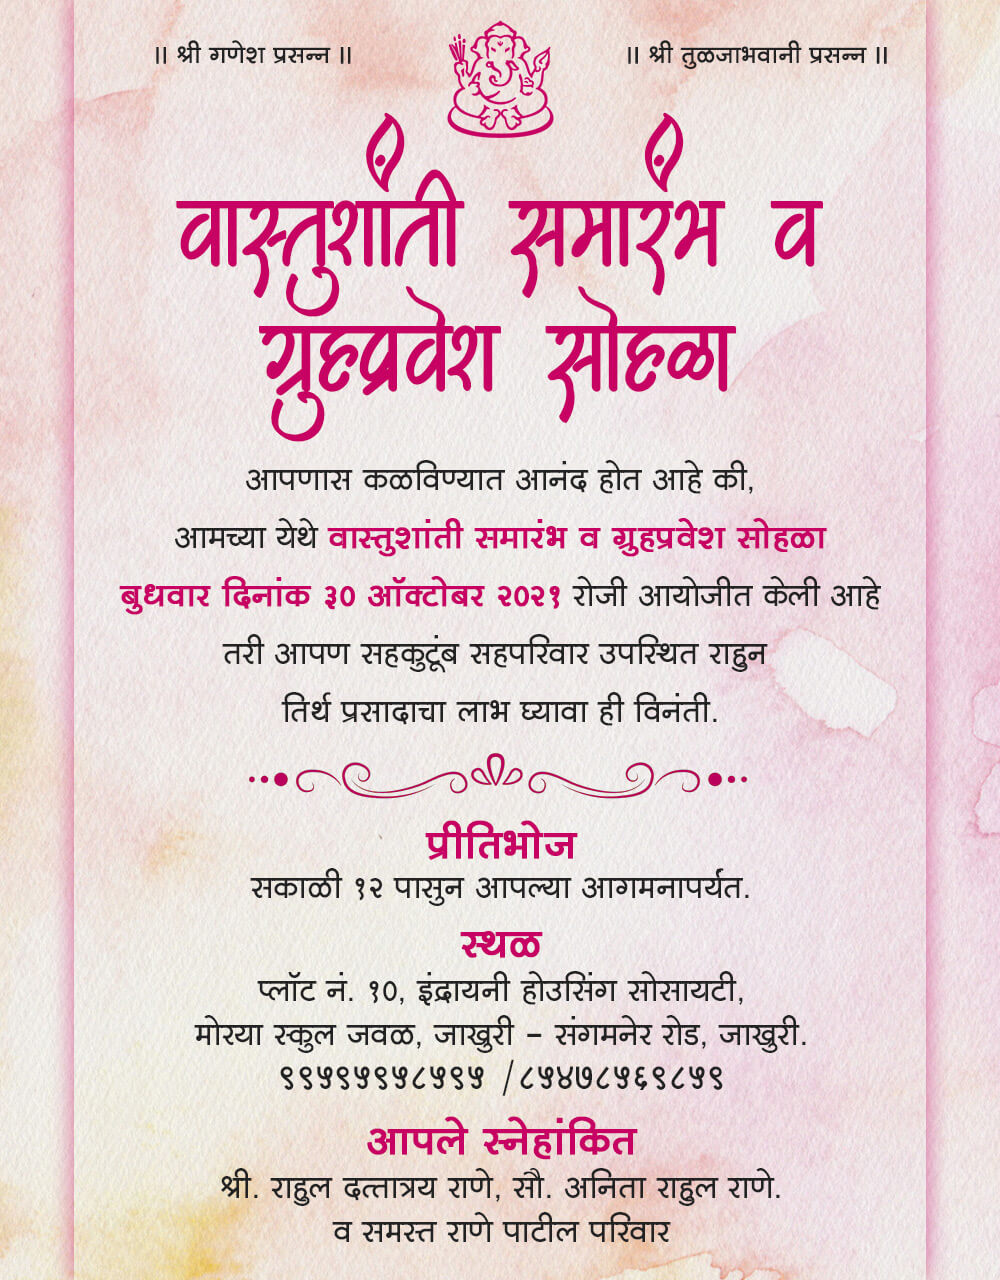  Housewarming or Vastushanti invitation | Griha pravesh invitation 